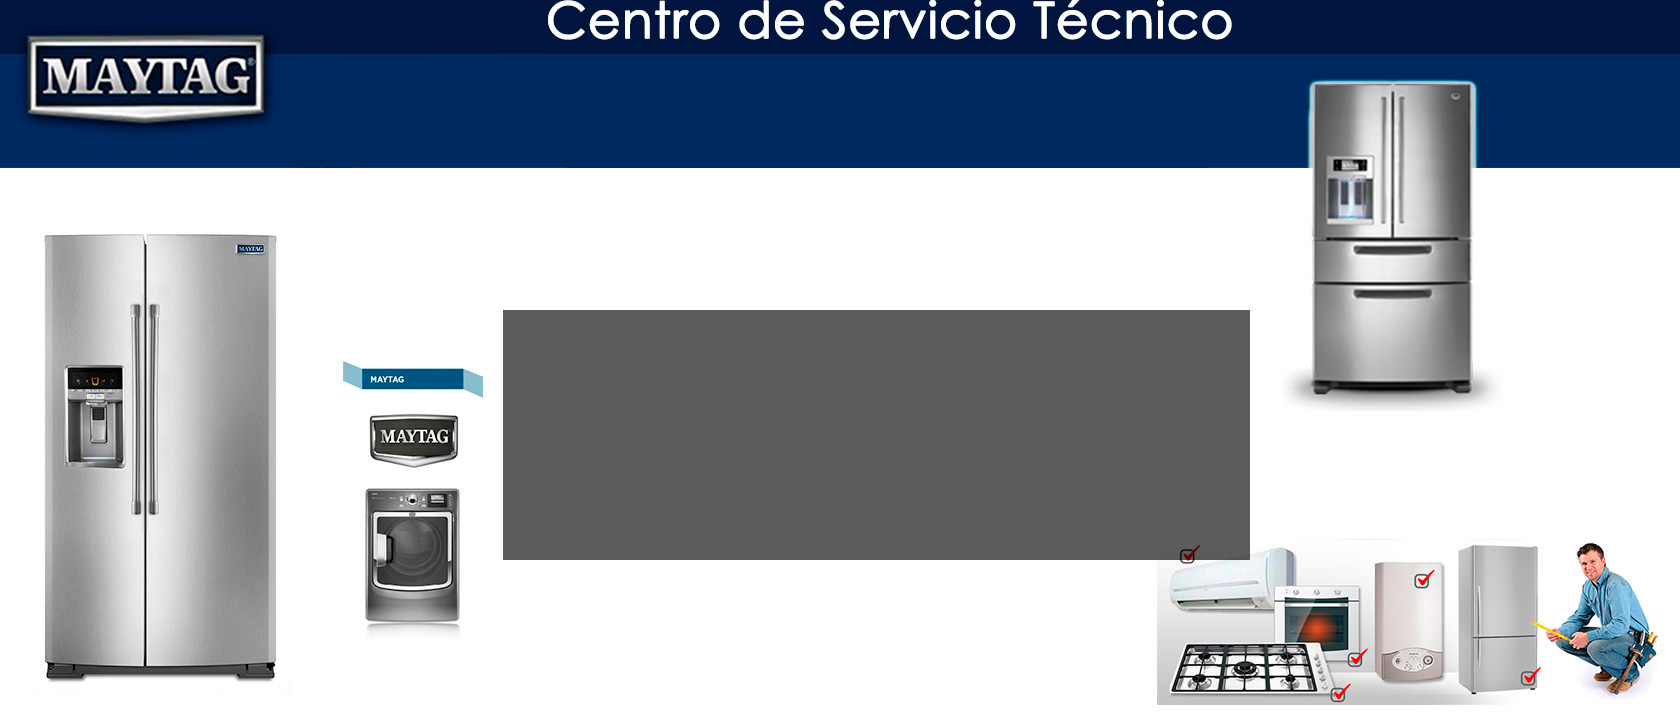 Centro de Servicio Tecnico De Linea Blanca maytag Estado de Mexico DF